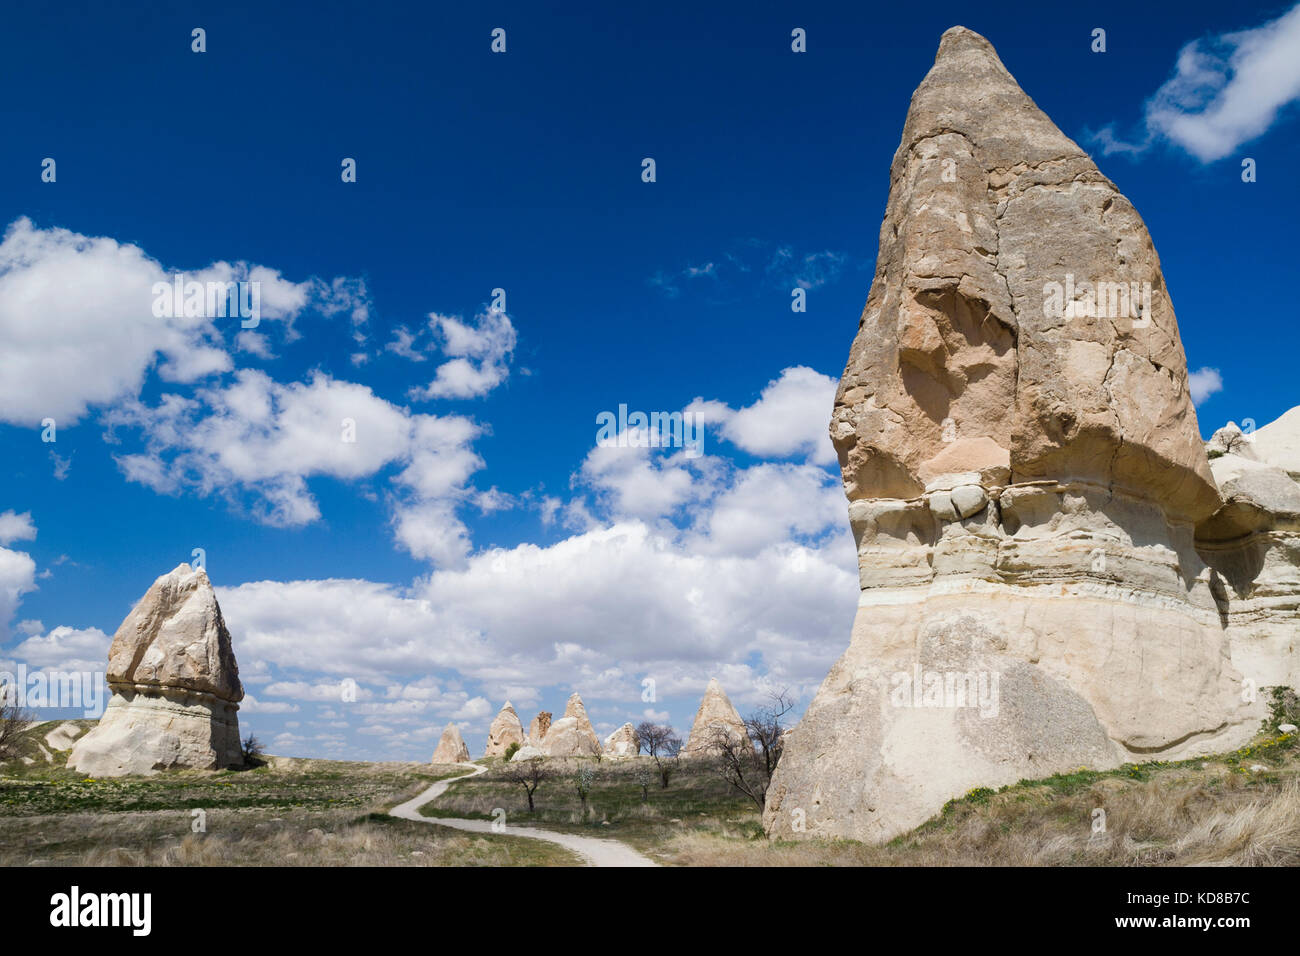 La vallée de l'amour, Goreme, Cappadoce, Turquie Banque D'Images